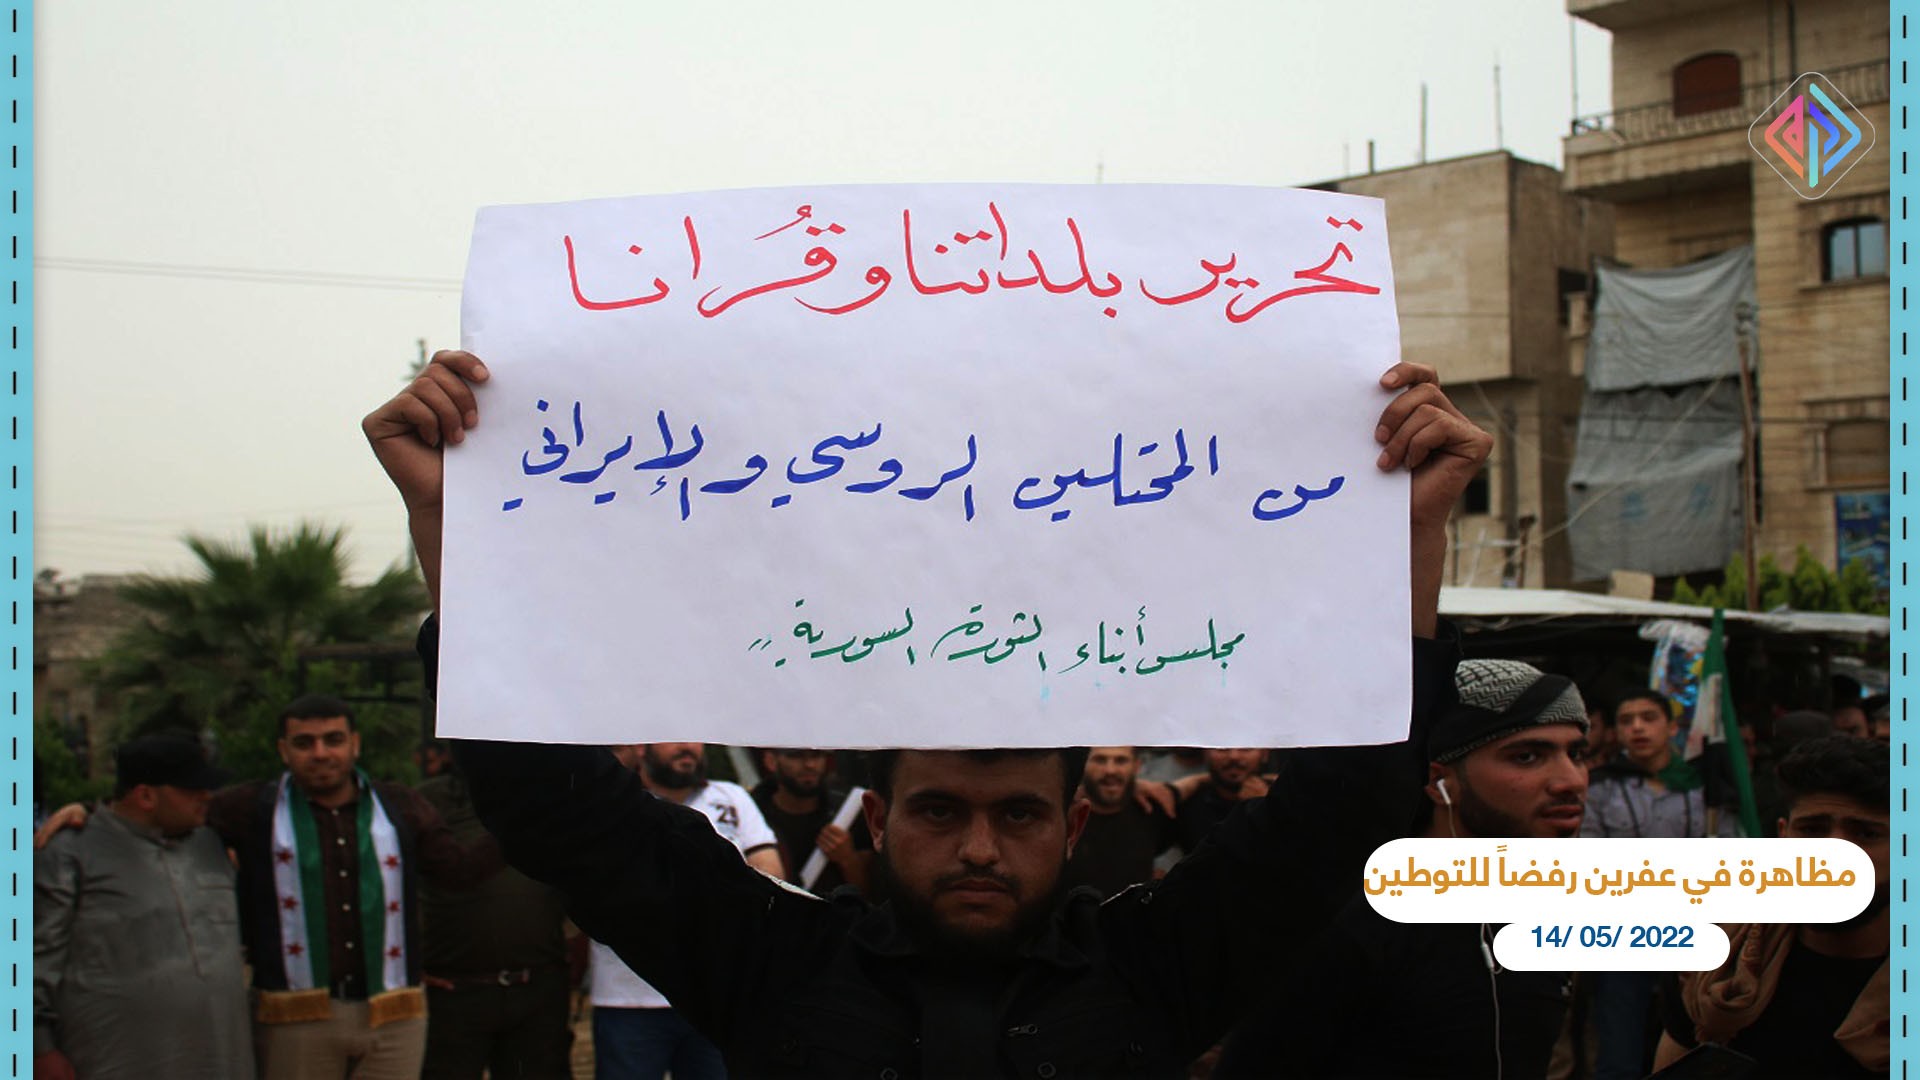 مظاهرة في عفرين-رفضاً للتوطين 14 أيار 2022.jpg